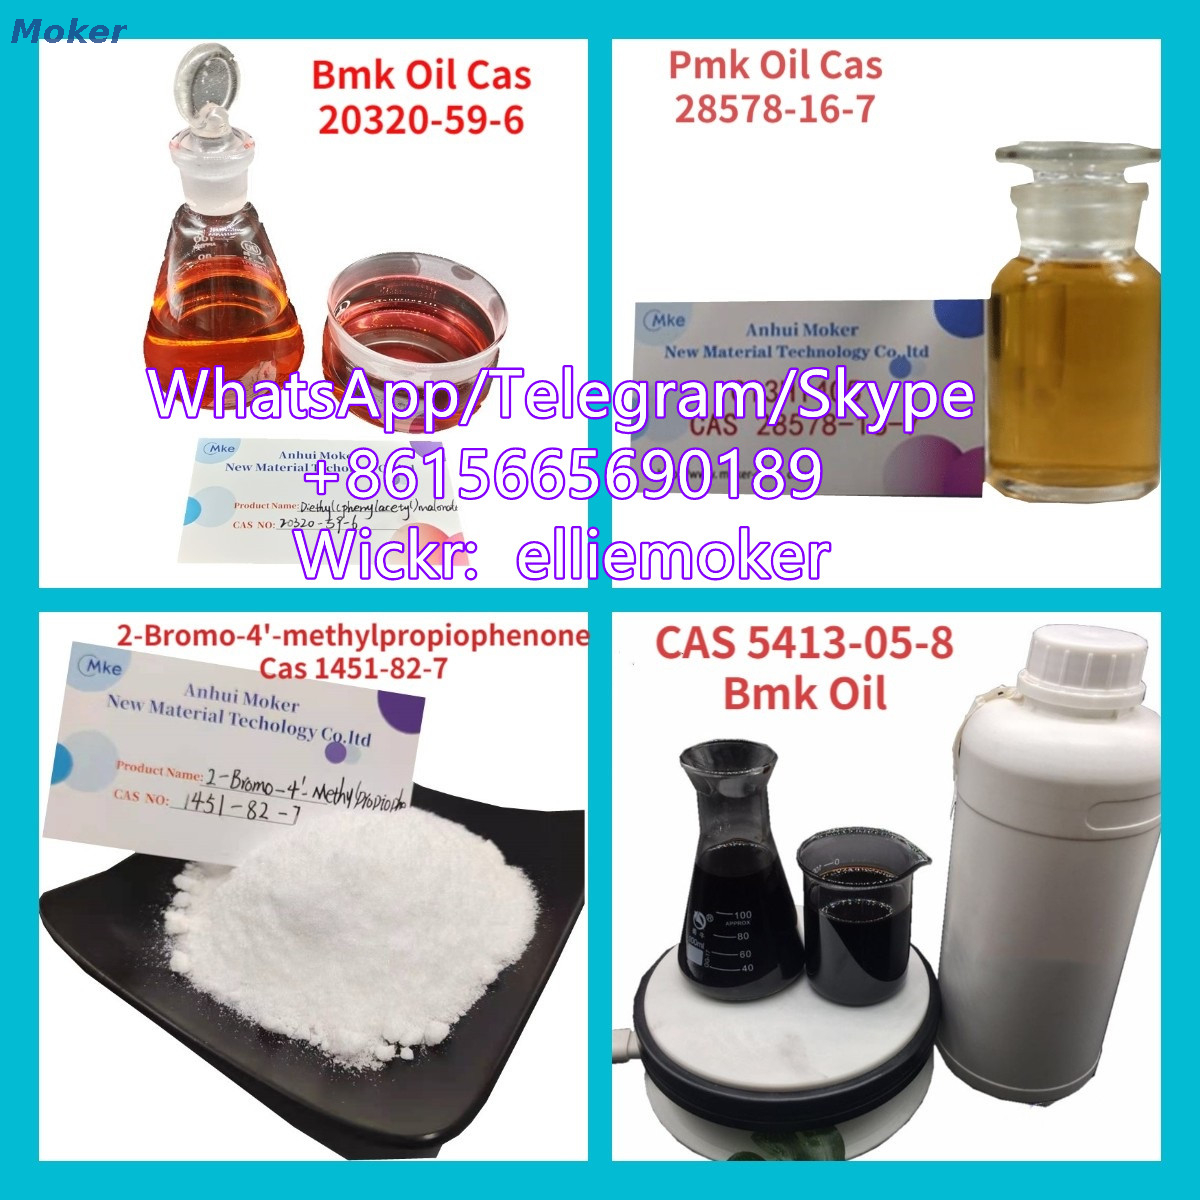 Pure Pmk Glycidate Powder, Pmk Oil Cas 28578-16-7 